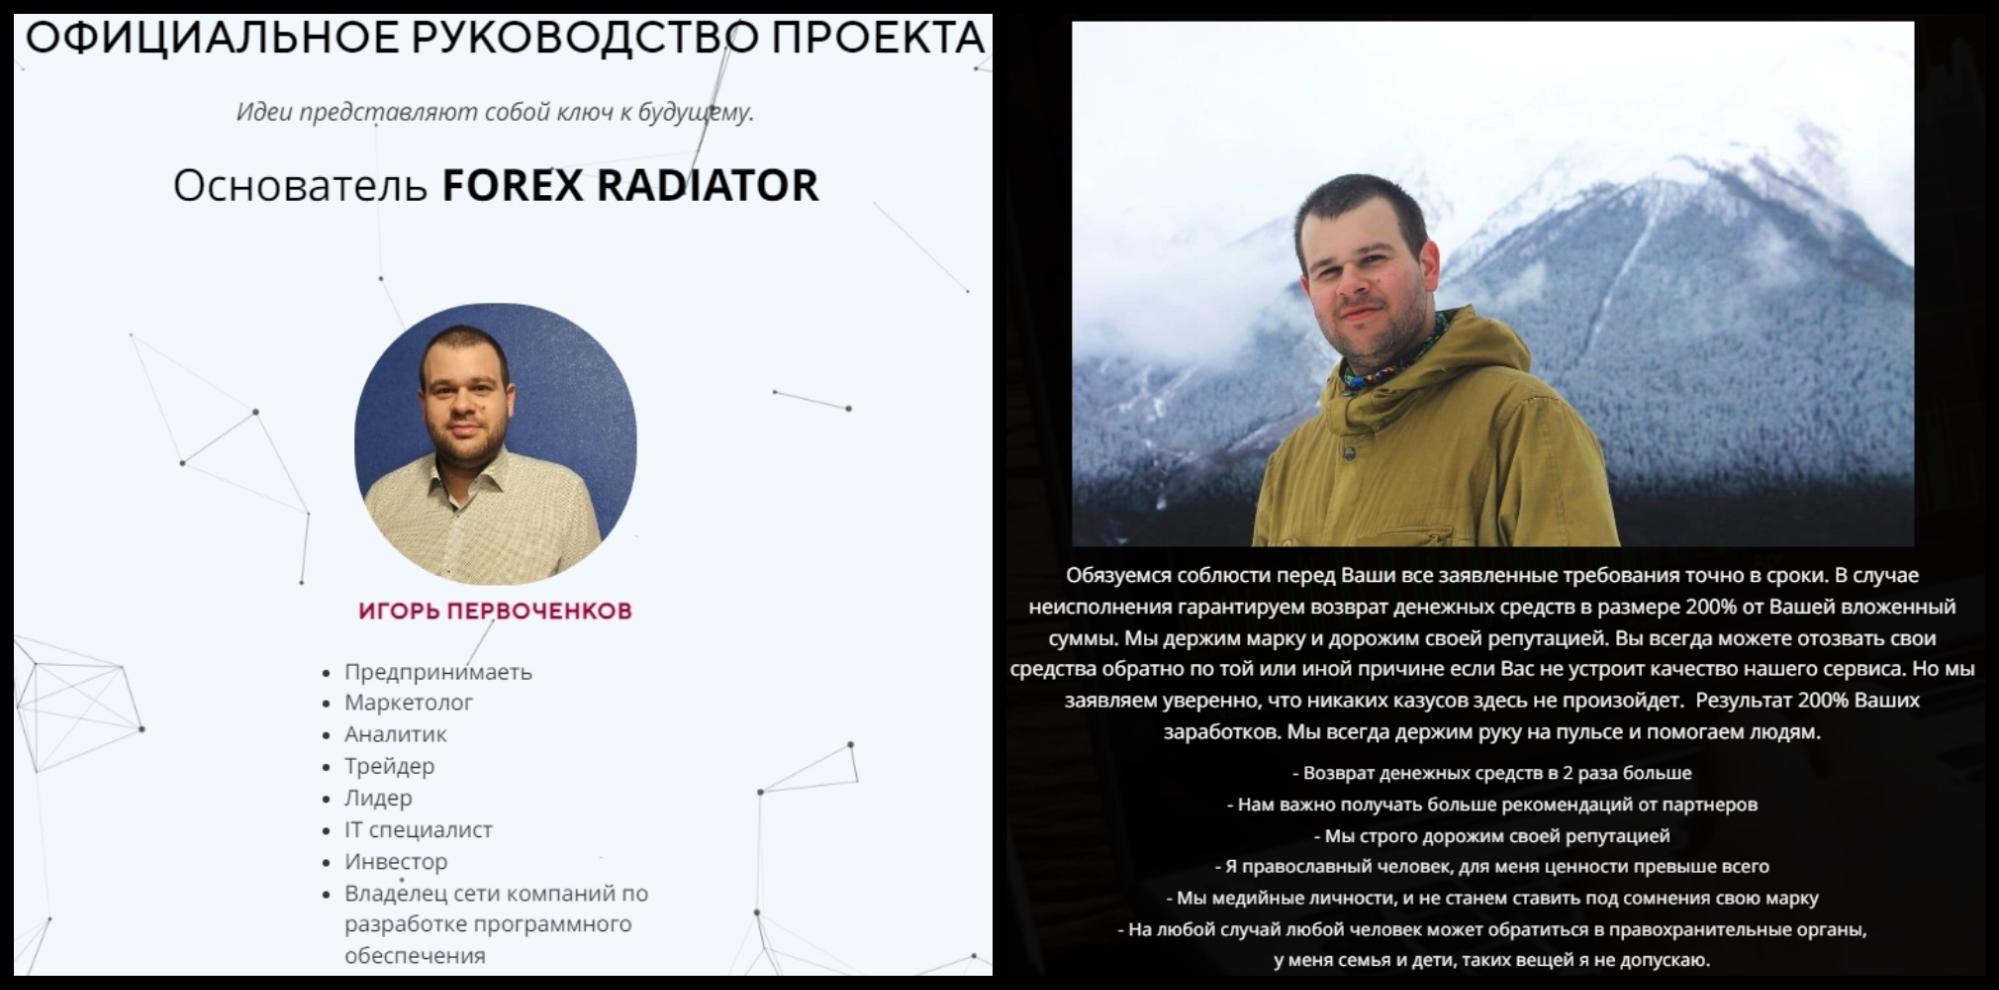 Основатель Forex Radiator